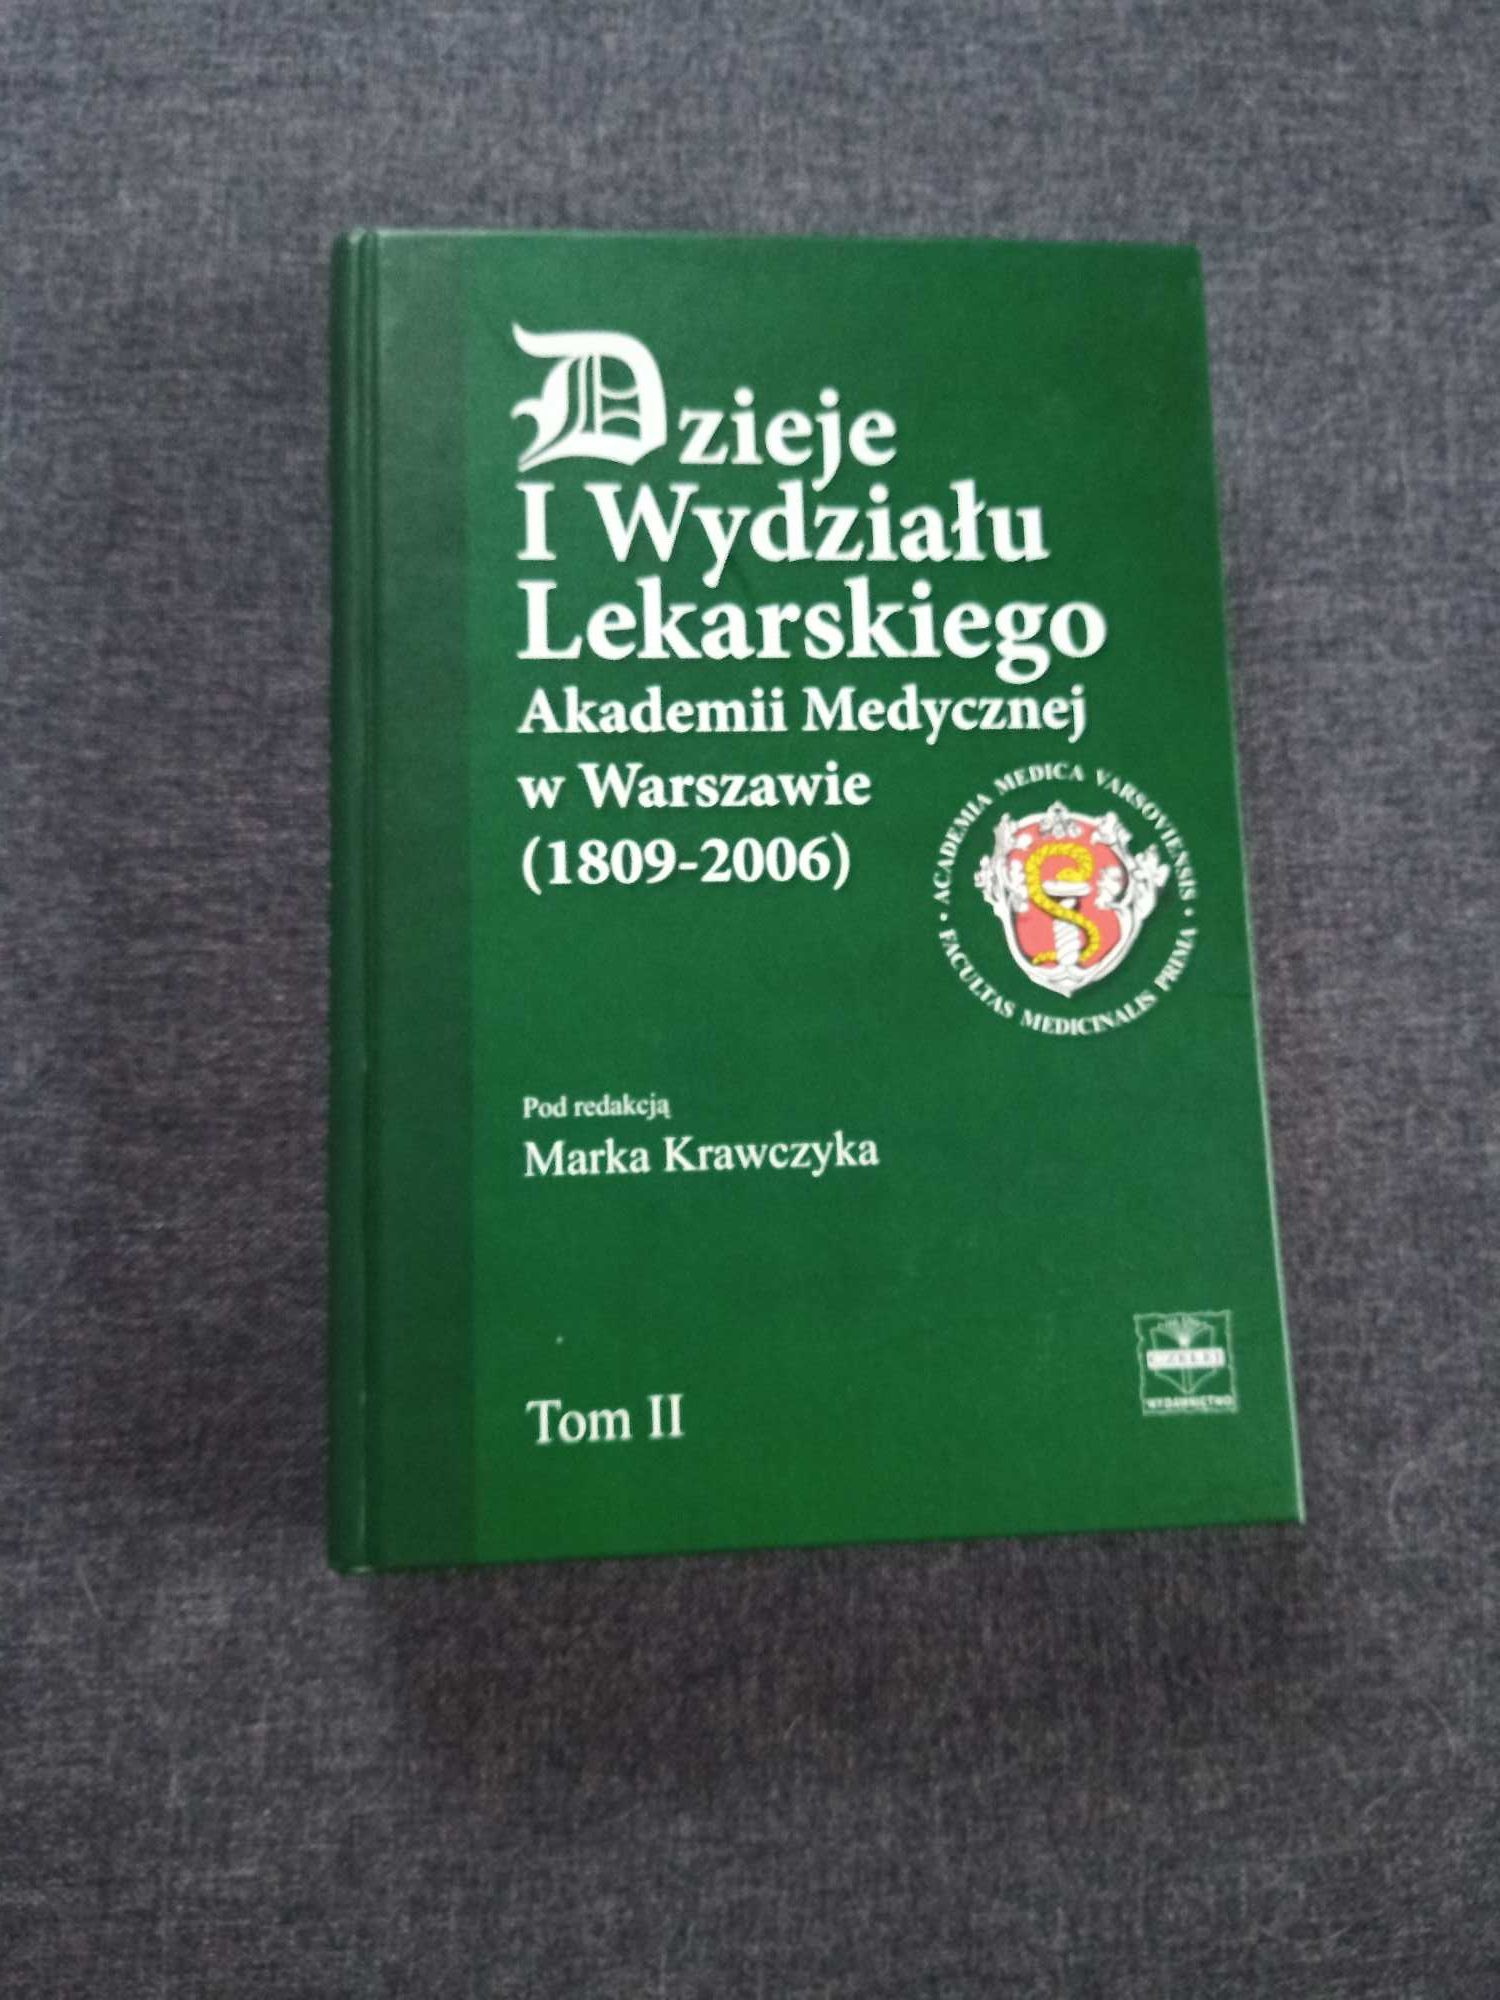 Dzieje I Wydziału Lekarskiego Akademii Medycznej w Warszawie. Książka.